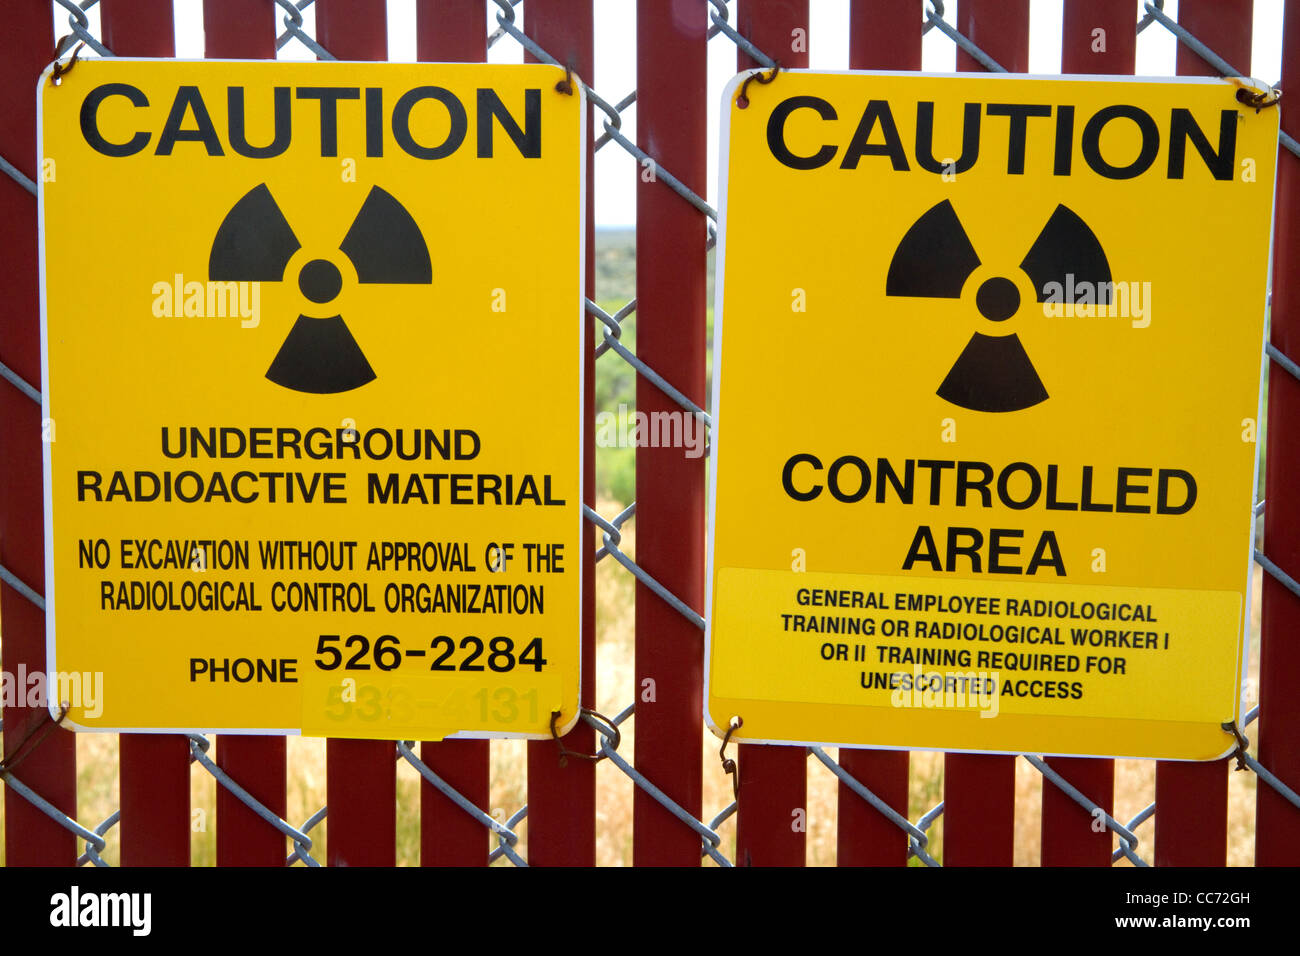 Strahlung Vorsicht Zeichen auf die EBR-ich stillgelegt Forschung Reaktor atomic Museum befindet sich in der Nähe von Arco, Idaho, USA. Stockfoto